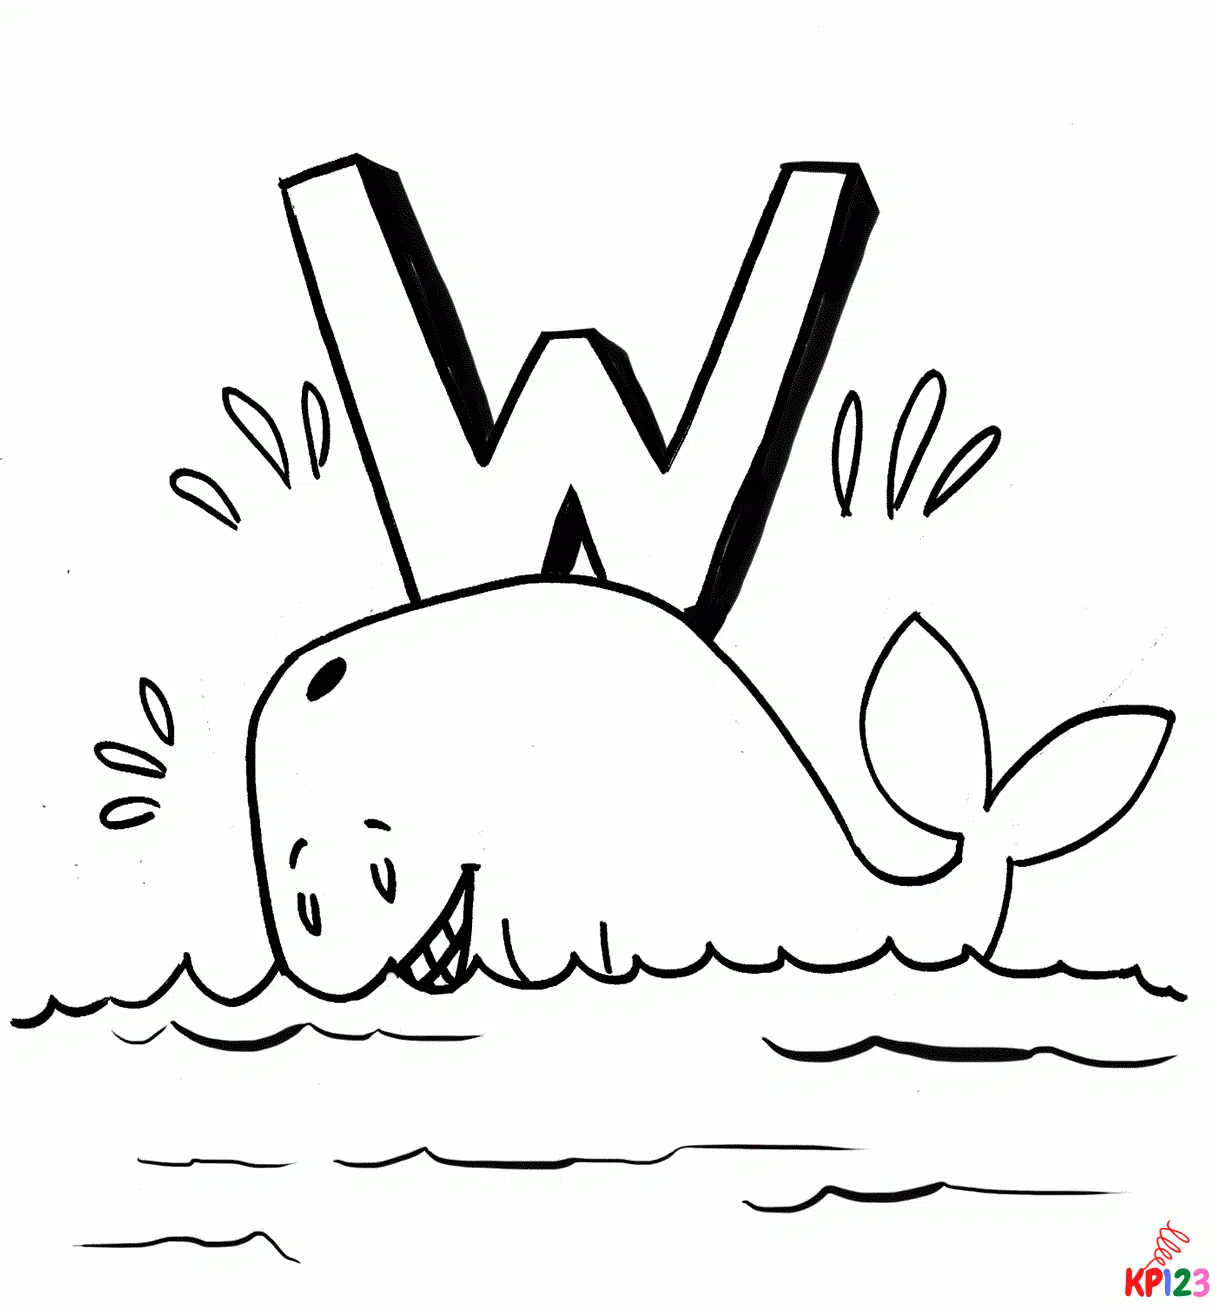 walvis 17